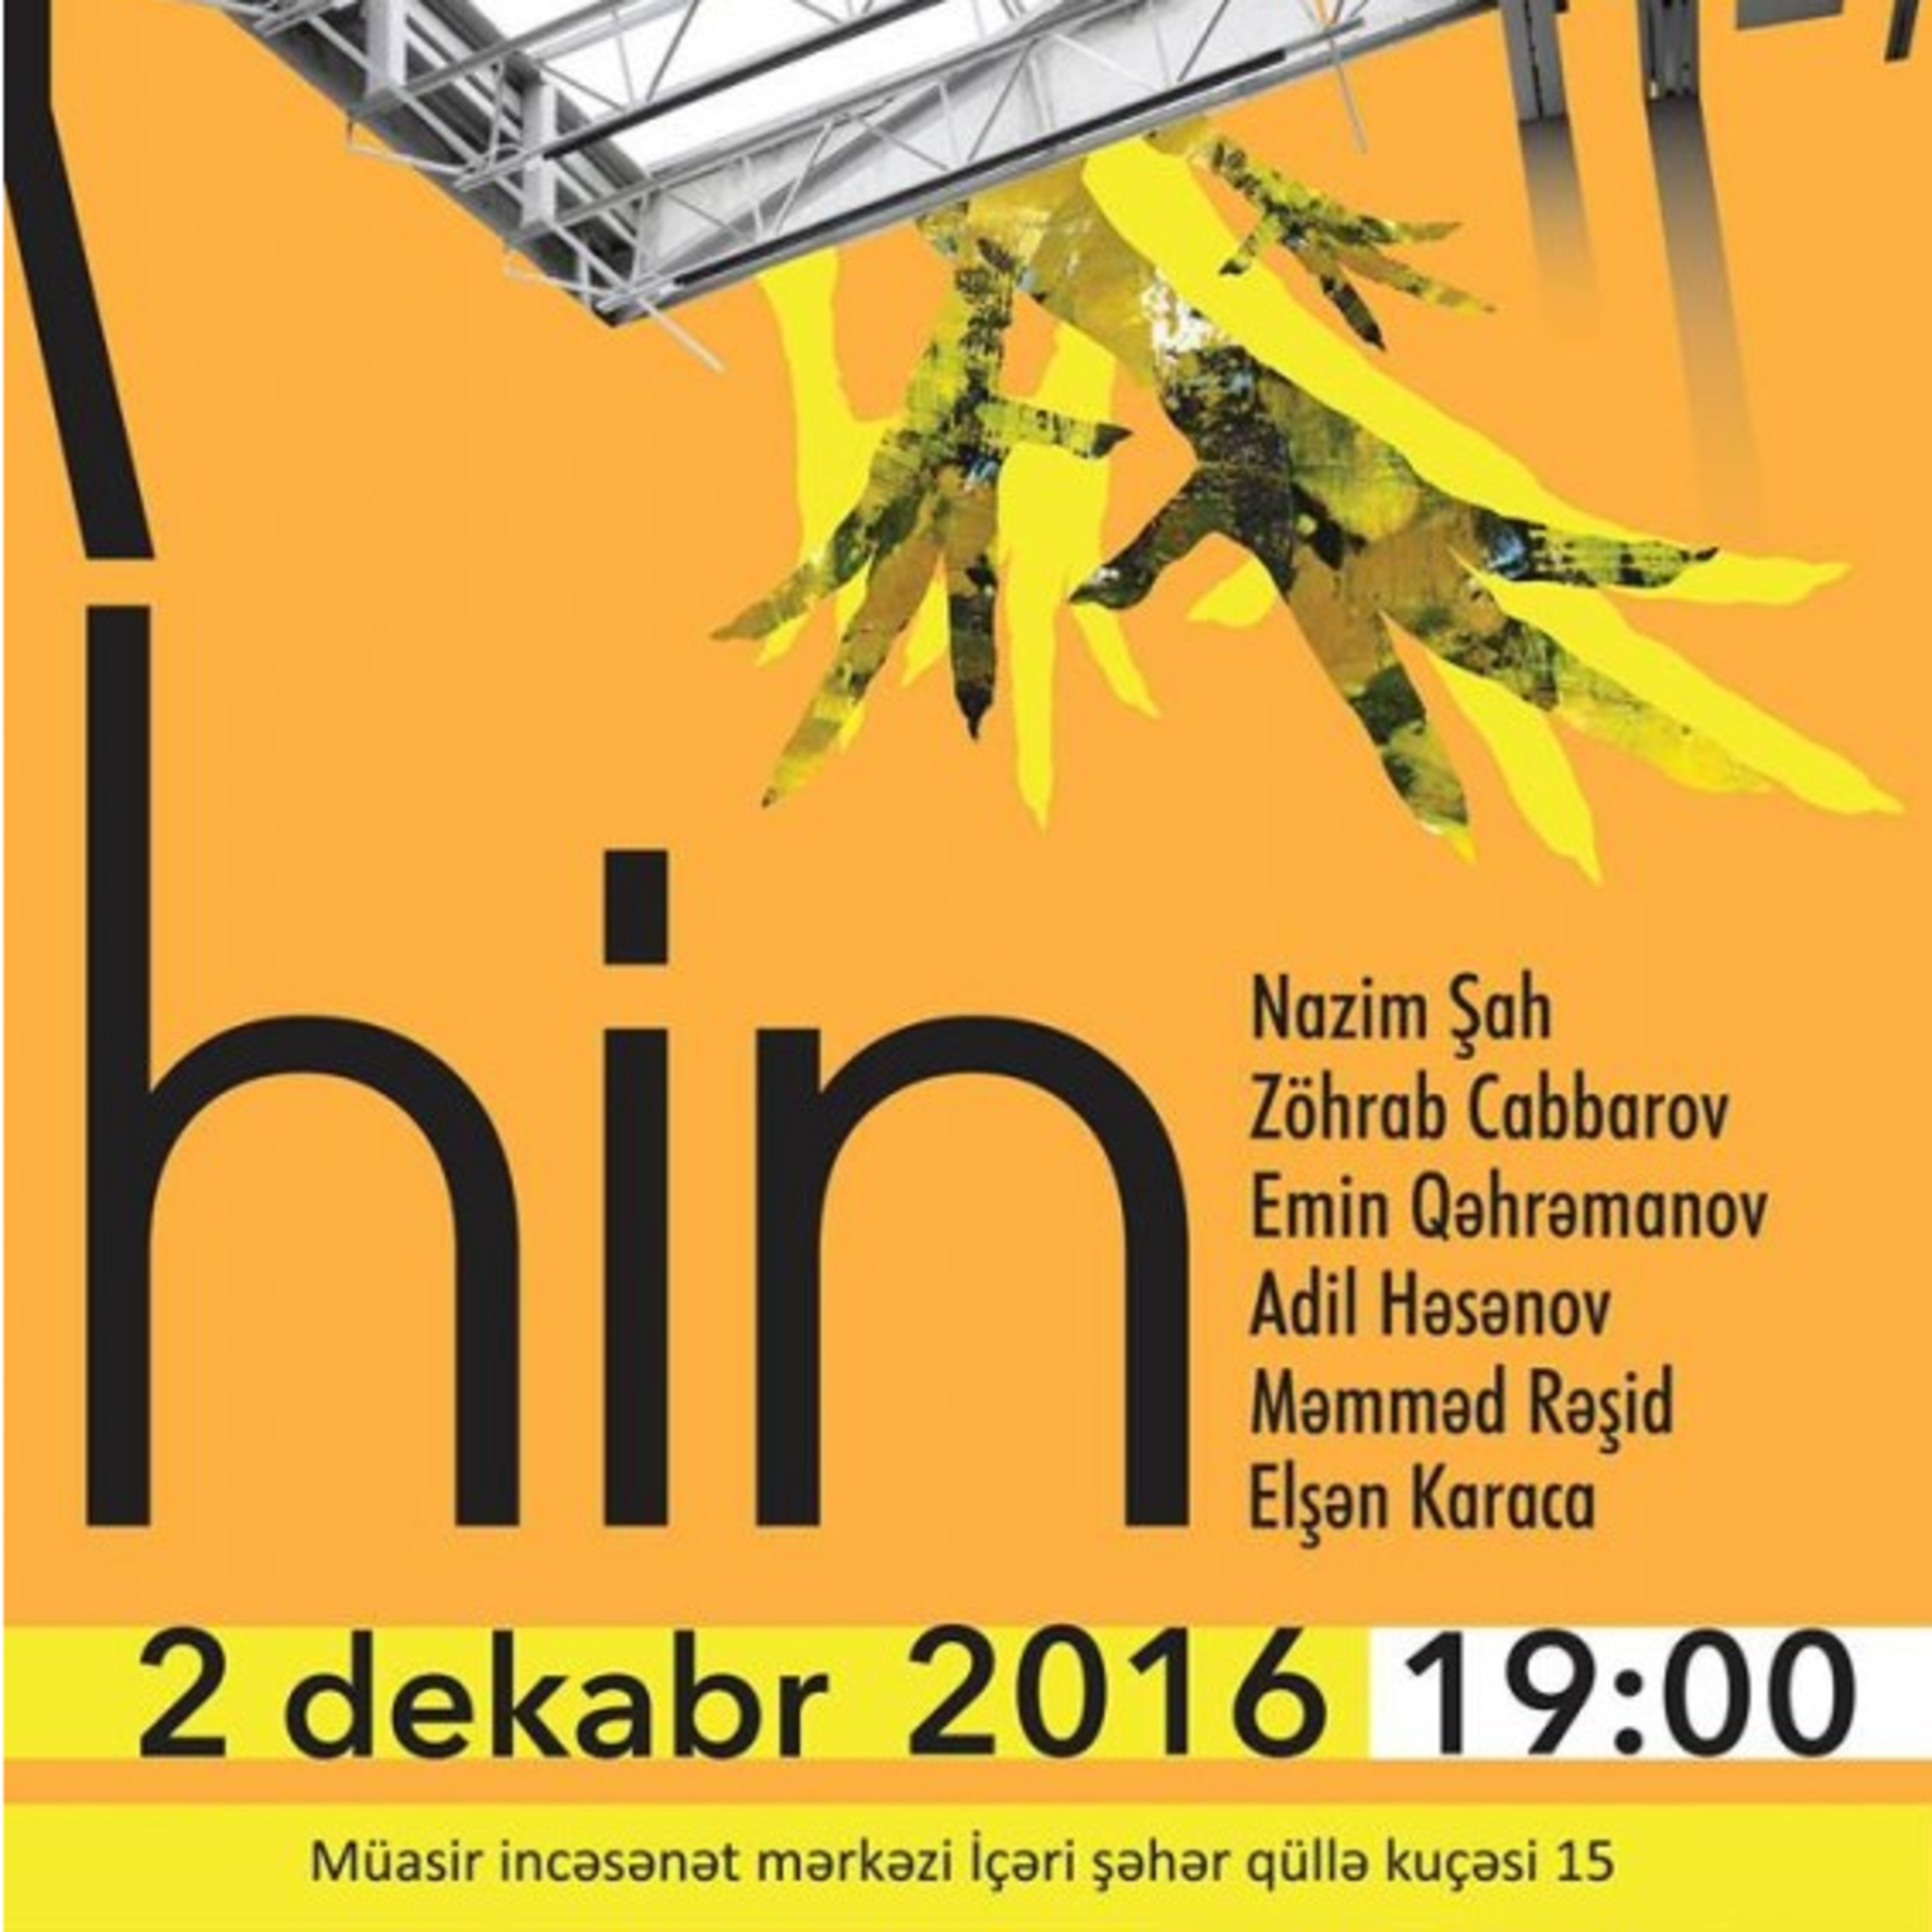 Выставка молодых художников «Hin»